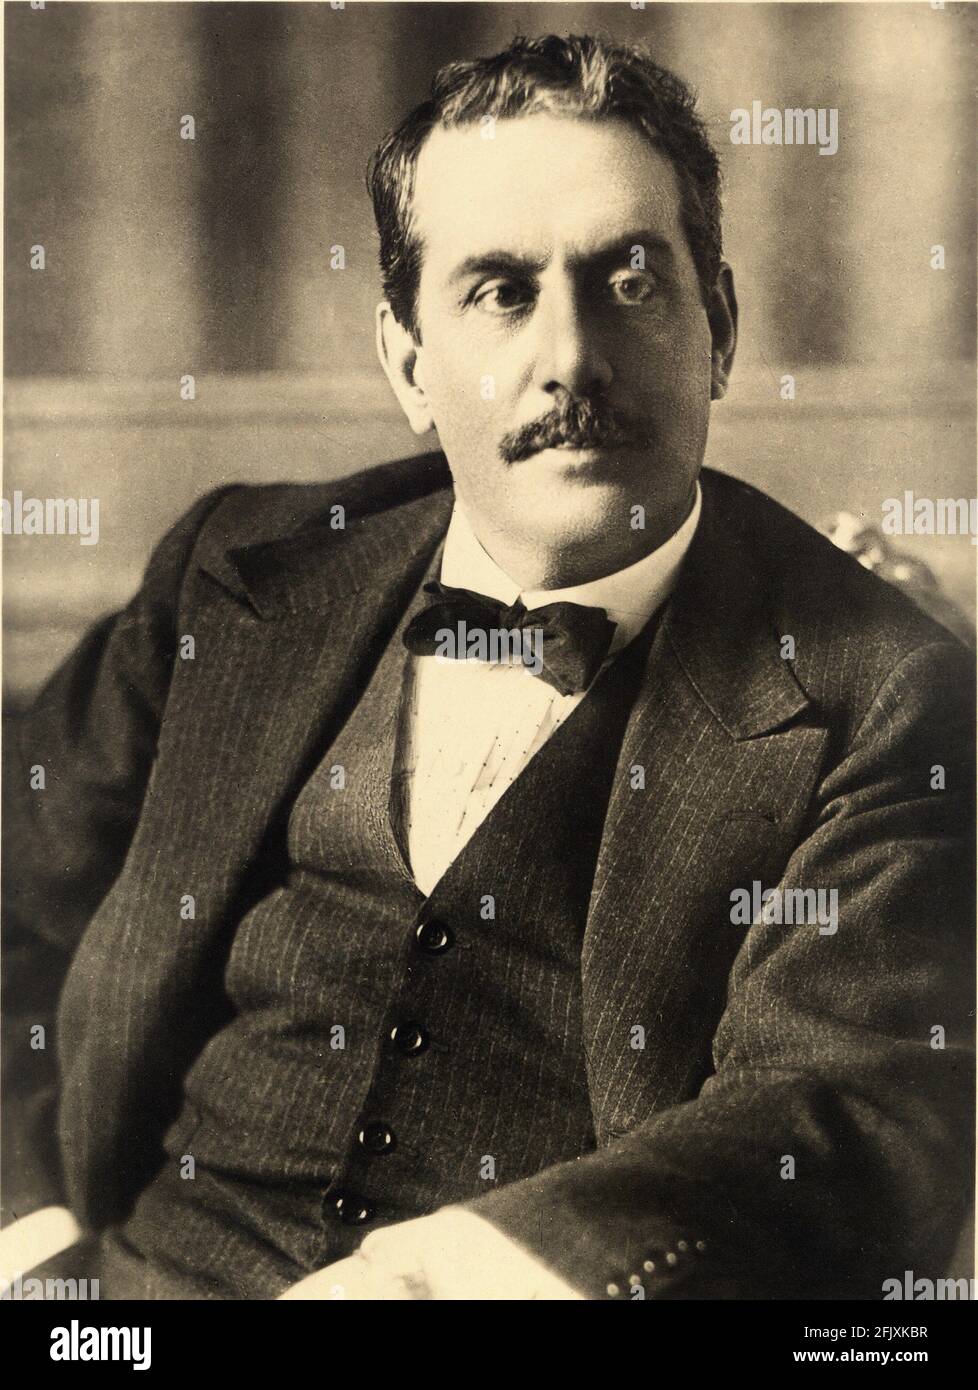 1905 ca: The italian celebrated Opera music composer GIACOMO PUCCINI ( 1858  - 1924 ) - COMPOSITORE LIRICO - LIRICA - MUSICA classica - classical -  musicista - musician - portrait -